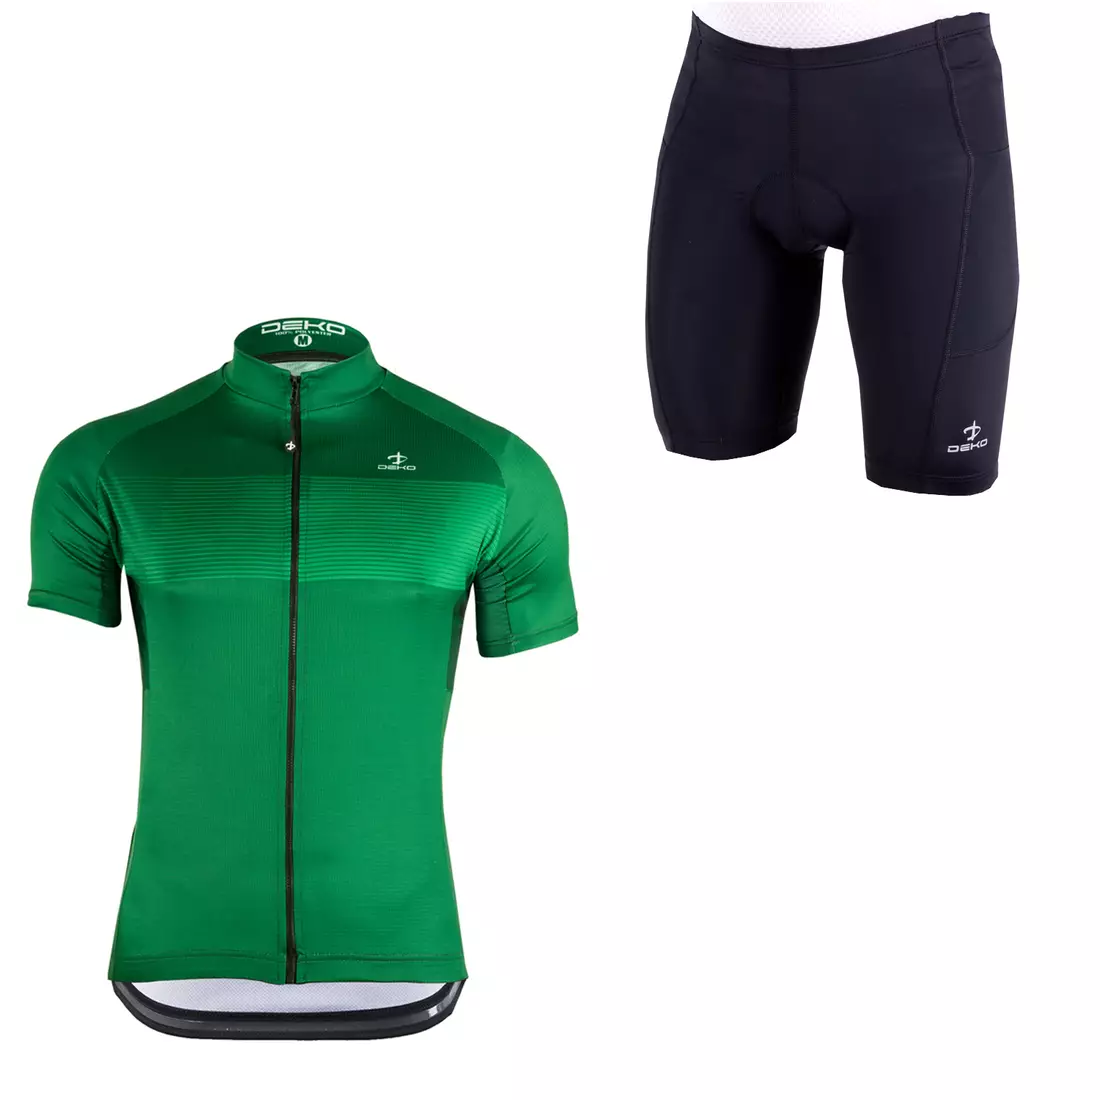 [Set] DEKO STYLE-0421 férfi kerékpáros mez rövid ujjú, zöld + DEKO POCKET kerékpáros nadrág, fekete 